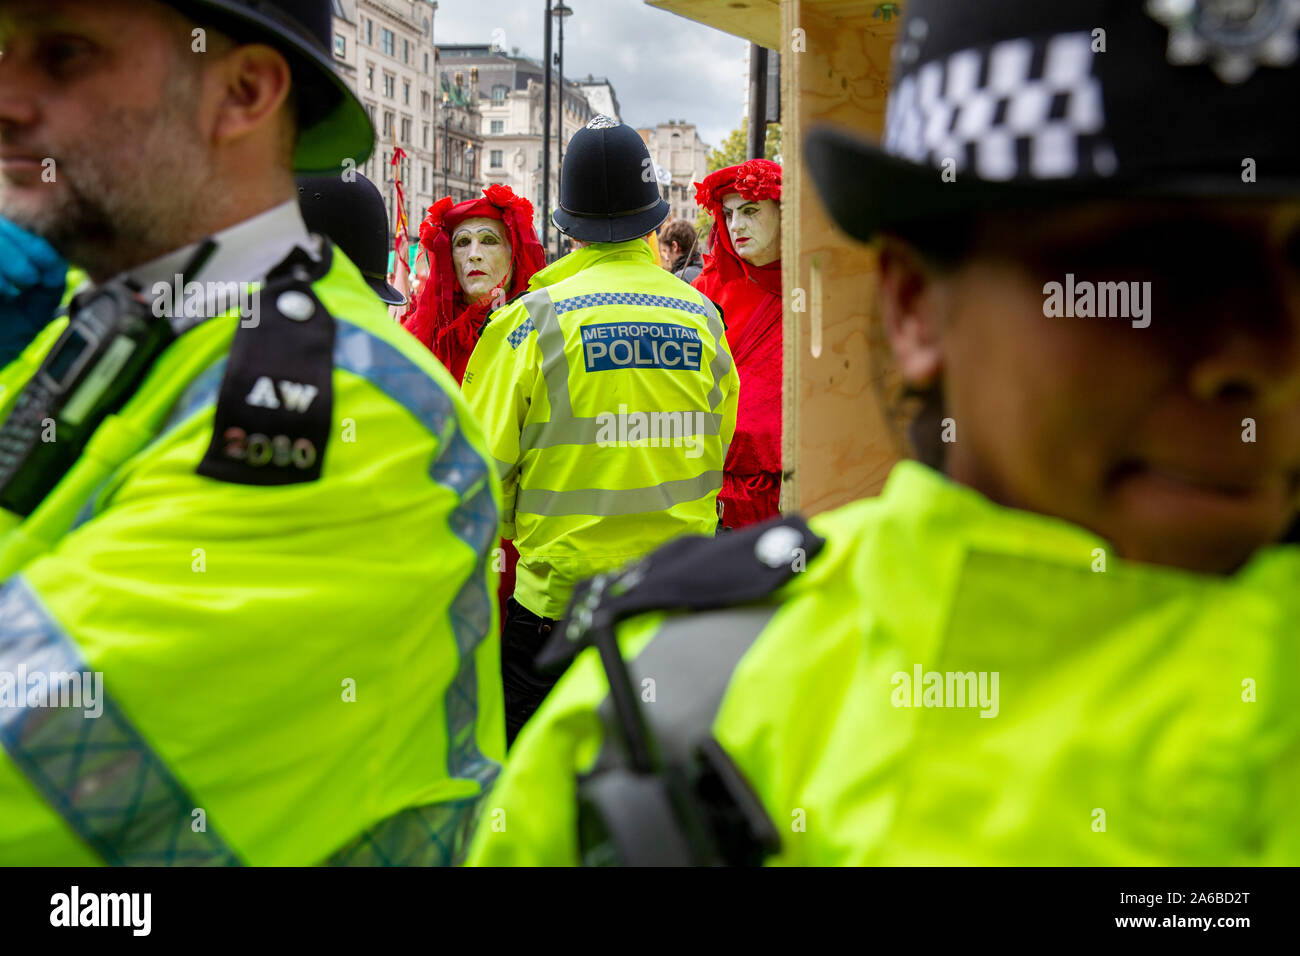 London, 10. Oktober 2019, vom Aussterben Rebellion Gruppe in rot Kostüme surround Polizei acivists vorbereiten, die sich um eine Holz- struktur in der Straße neben dem Trafalgar Square gesperrt haben zu verhaften. Stockfoto